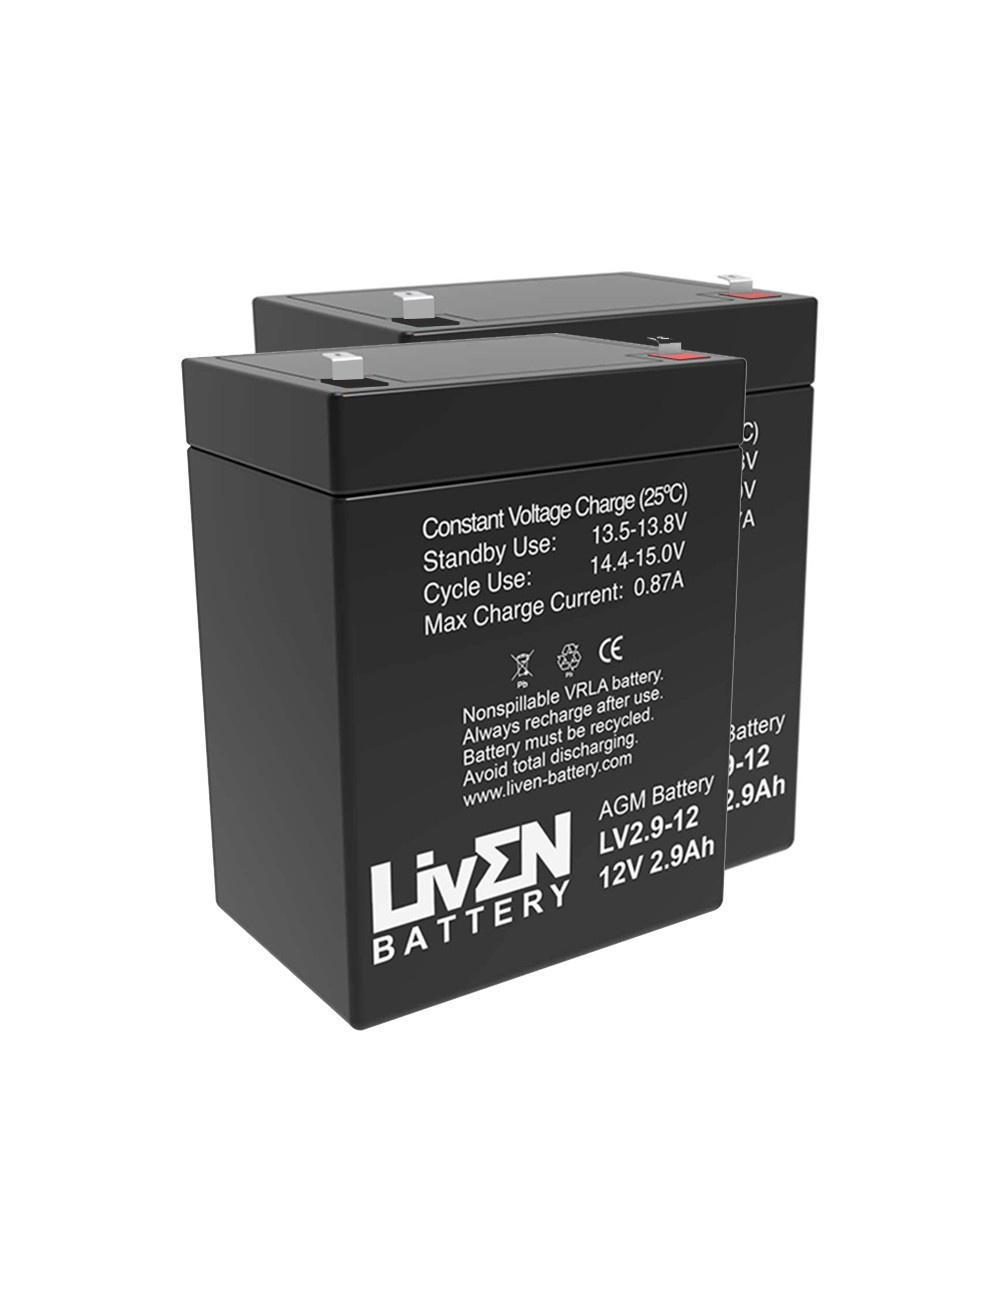 Pacote 2 baterias (24V) para elevadores de transferência e cestas Sunrise Medical Oxford Standaid 12V 2,9Ah C20 Liven LV2.9-12 -